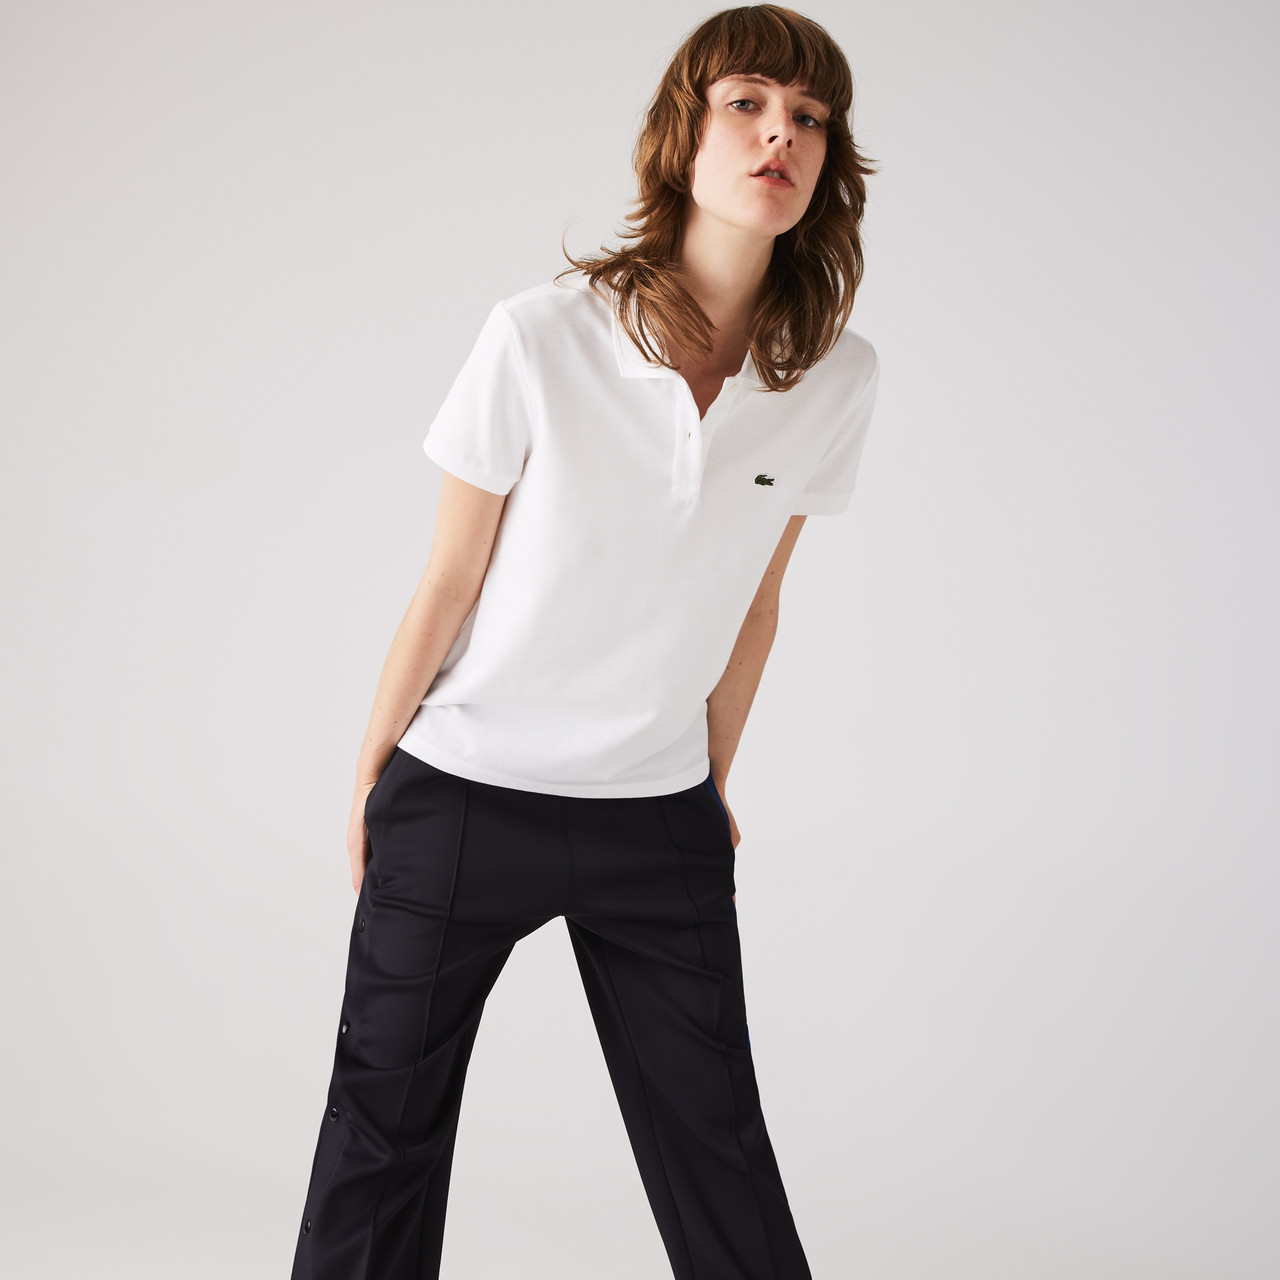 Lacoste Classic Fit Soft Cotton Petit Piqué Polo Shirt - Shop Sara Jane